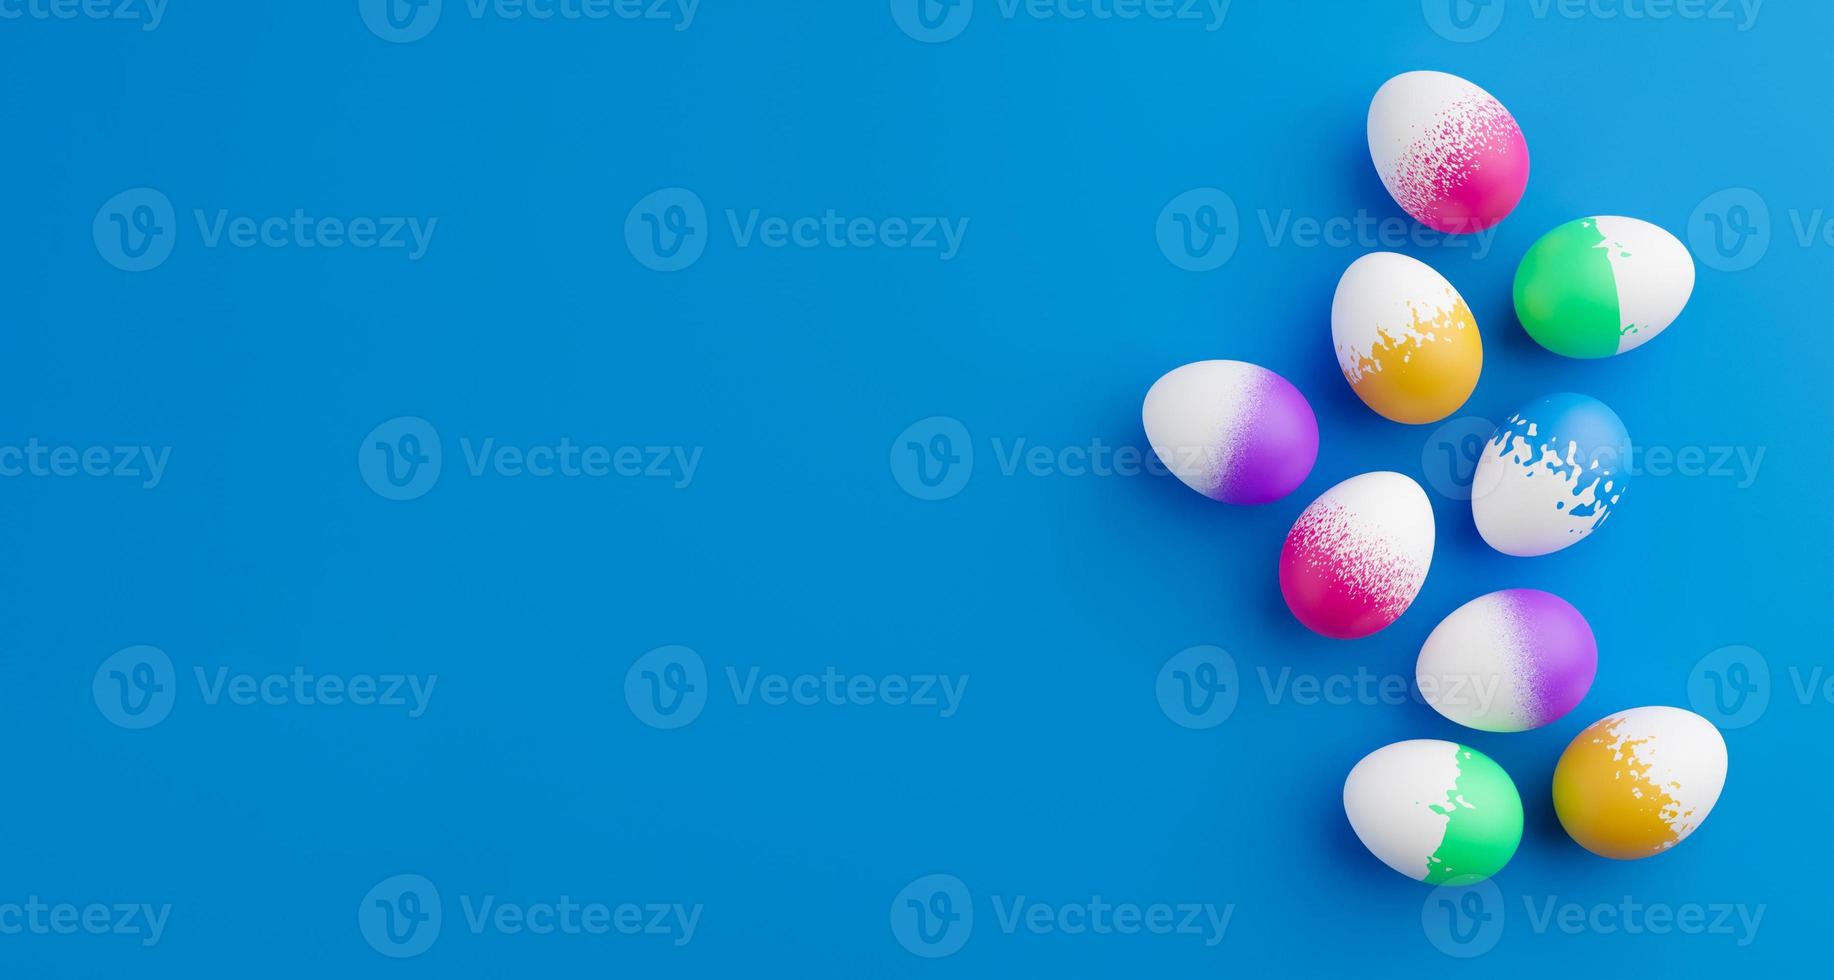 gäng färgglada ägg på en blå påsk bakgrund 3D-rendering. hög med birght och färgglada påskägg - 3D-rendering. påsk koncept sammansättning ram gränsen foto